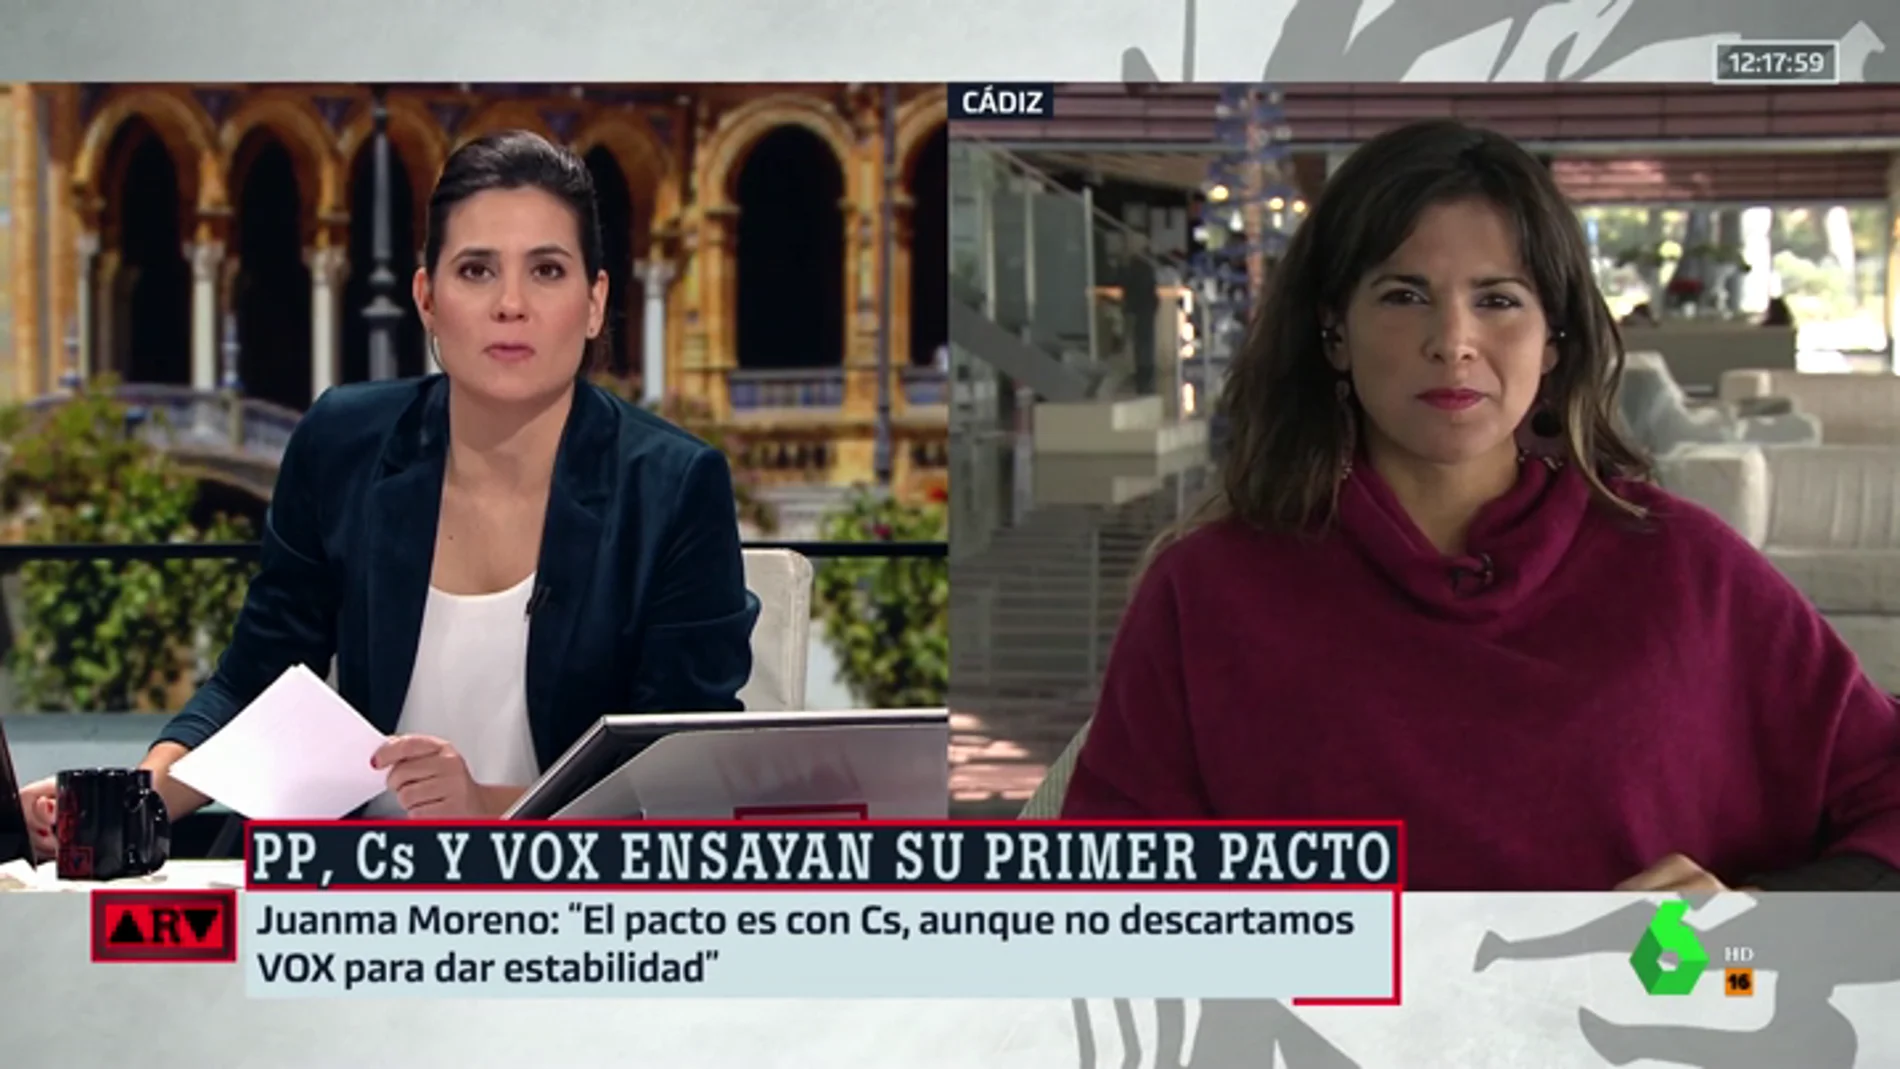 Teresa Rodríguez: "El acuerdo de PP, Cs y Vox pone en riesgo los derechos conquistados con mucho esfuerzo por el pueblo andaluz"